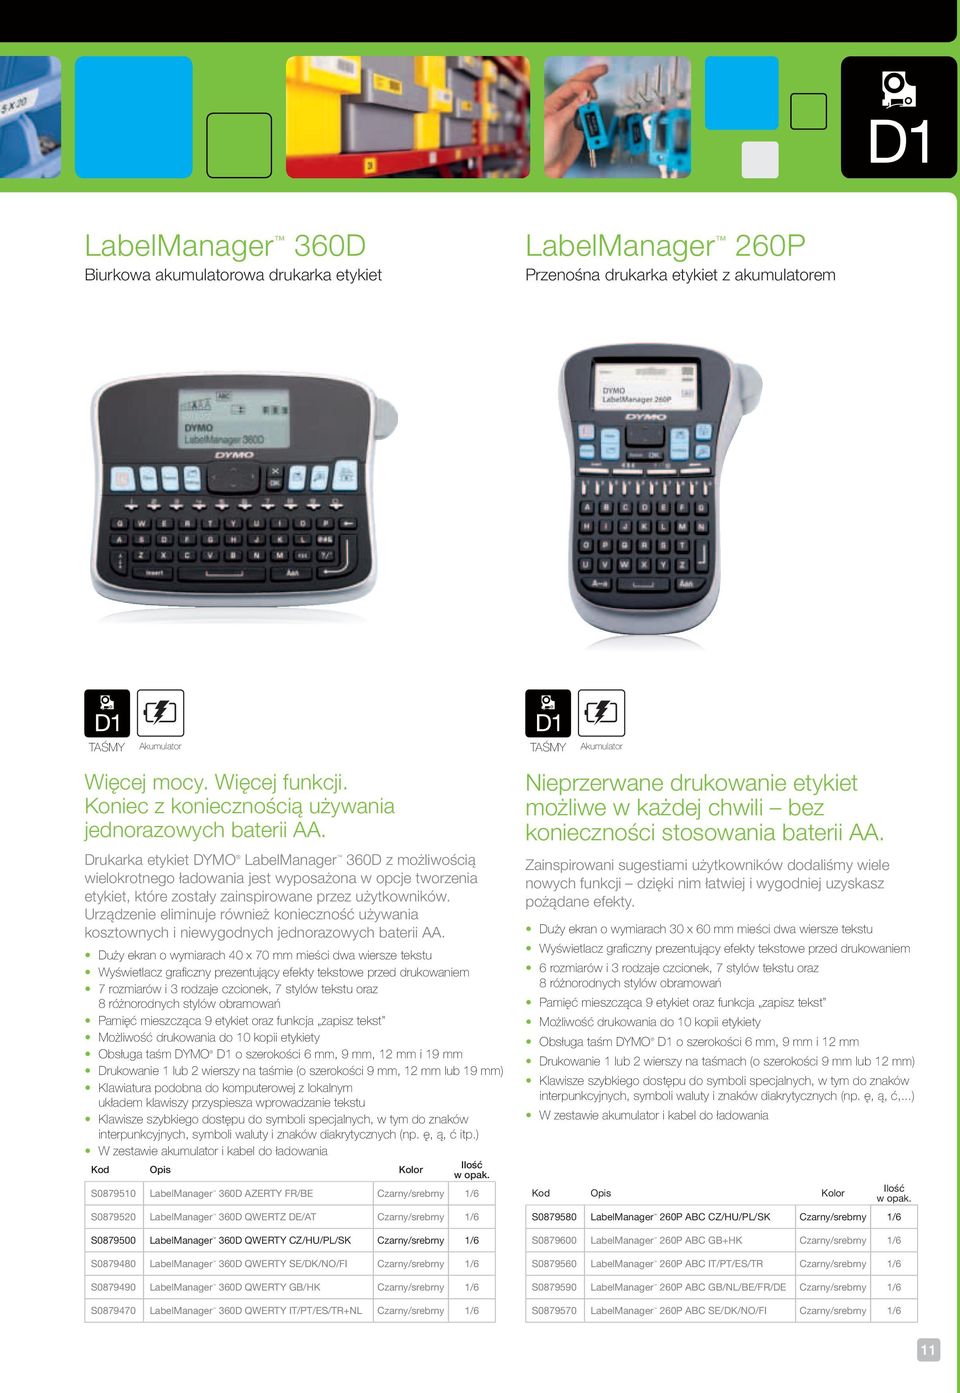 Drukarka etykiet DYMO LabelManager 360D z możliwością wielokrotnego ładowania jest wyposażona w opcje tworzenia etykiet, które zostały zainspirowane przez użytkowników.